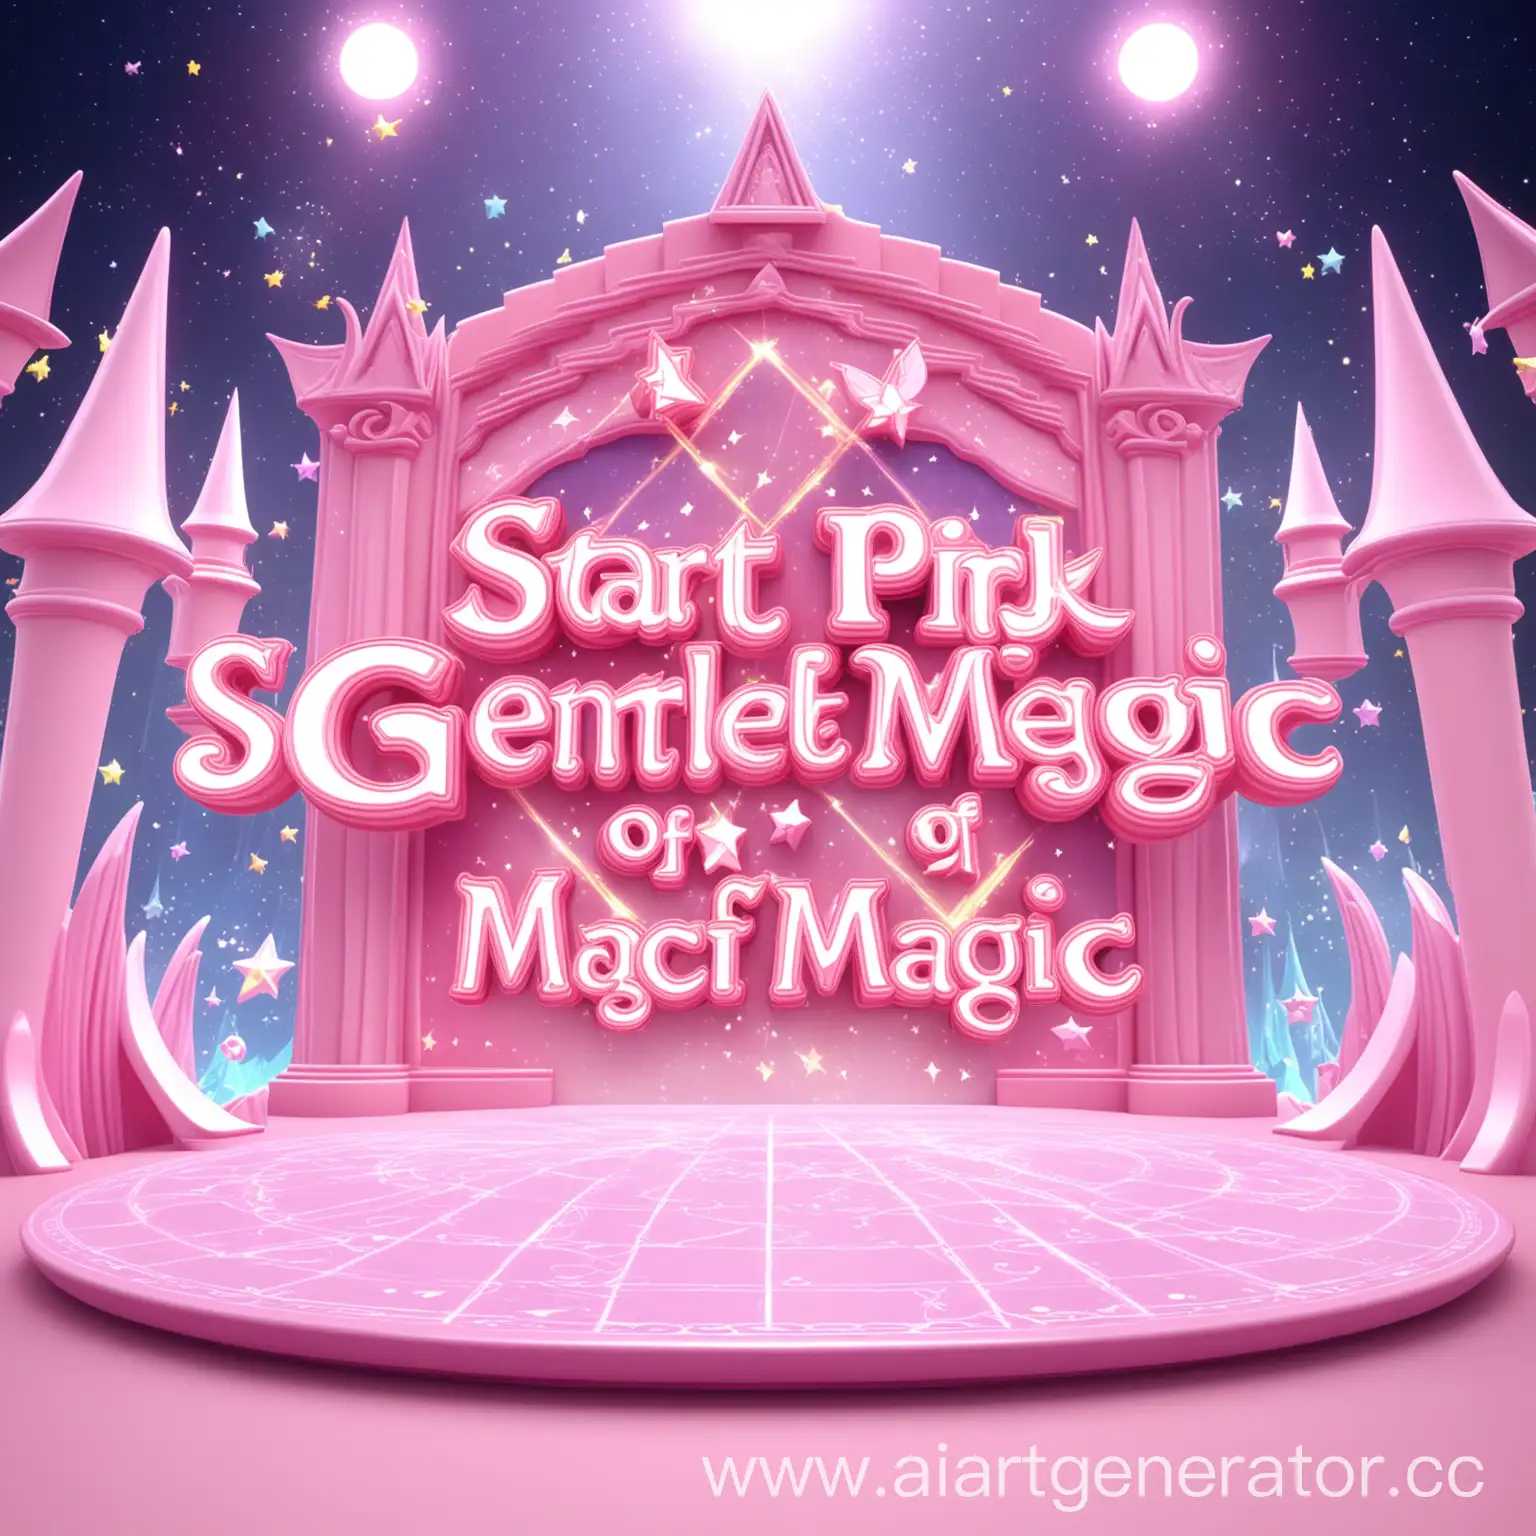 изображение, иллюстрирующее начальный экран 3д-игры про школу магии нежные розовые цвета, милые шрифты привлекательный для молодой женской аудитории.